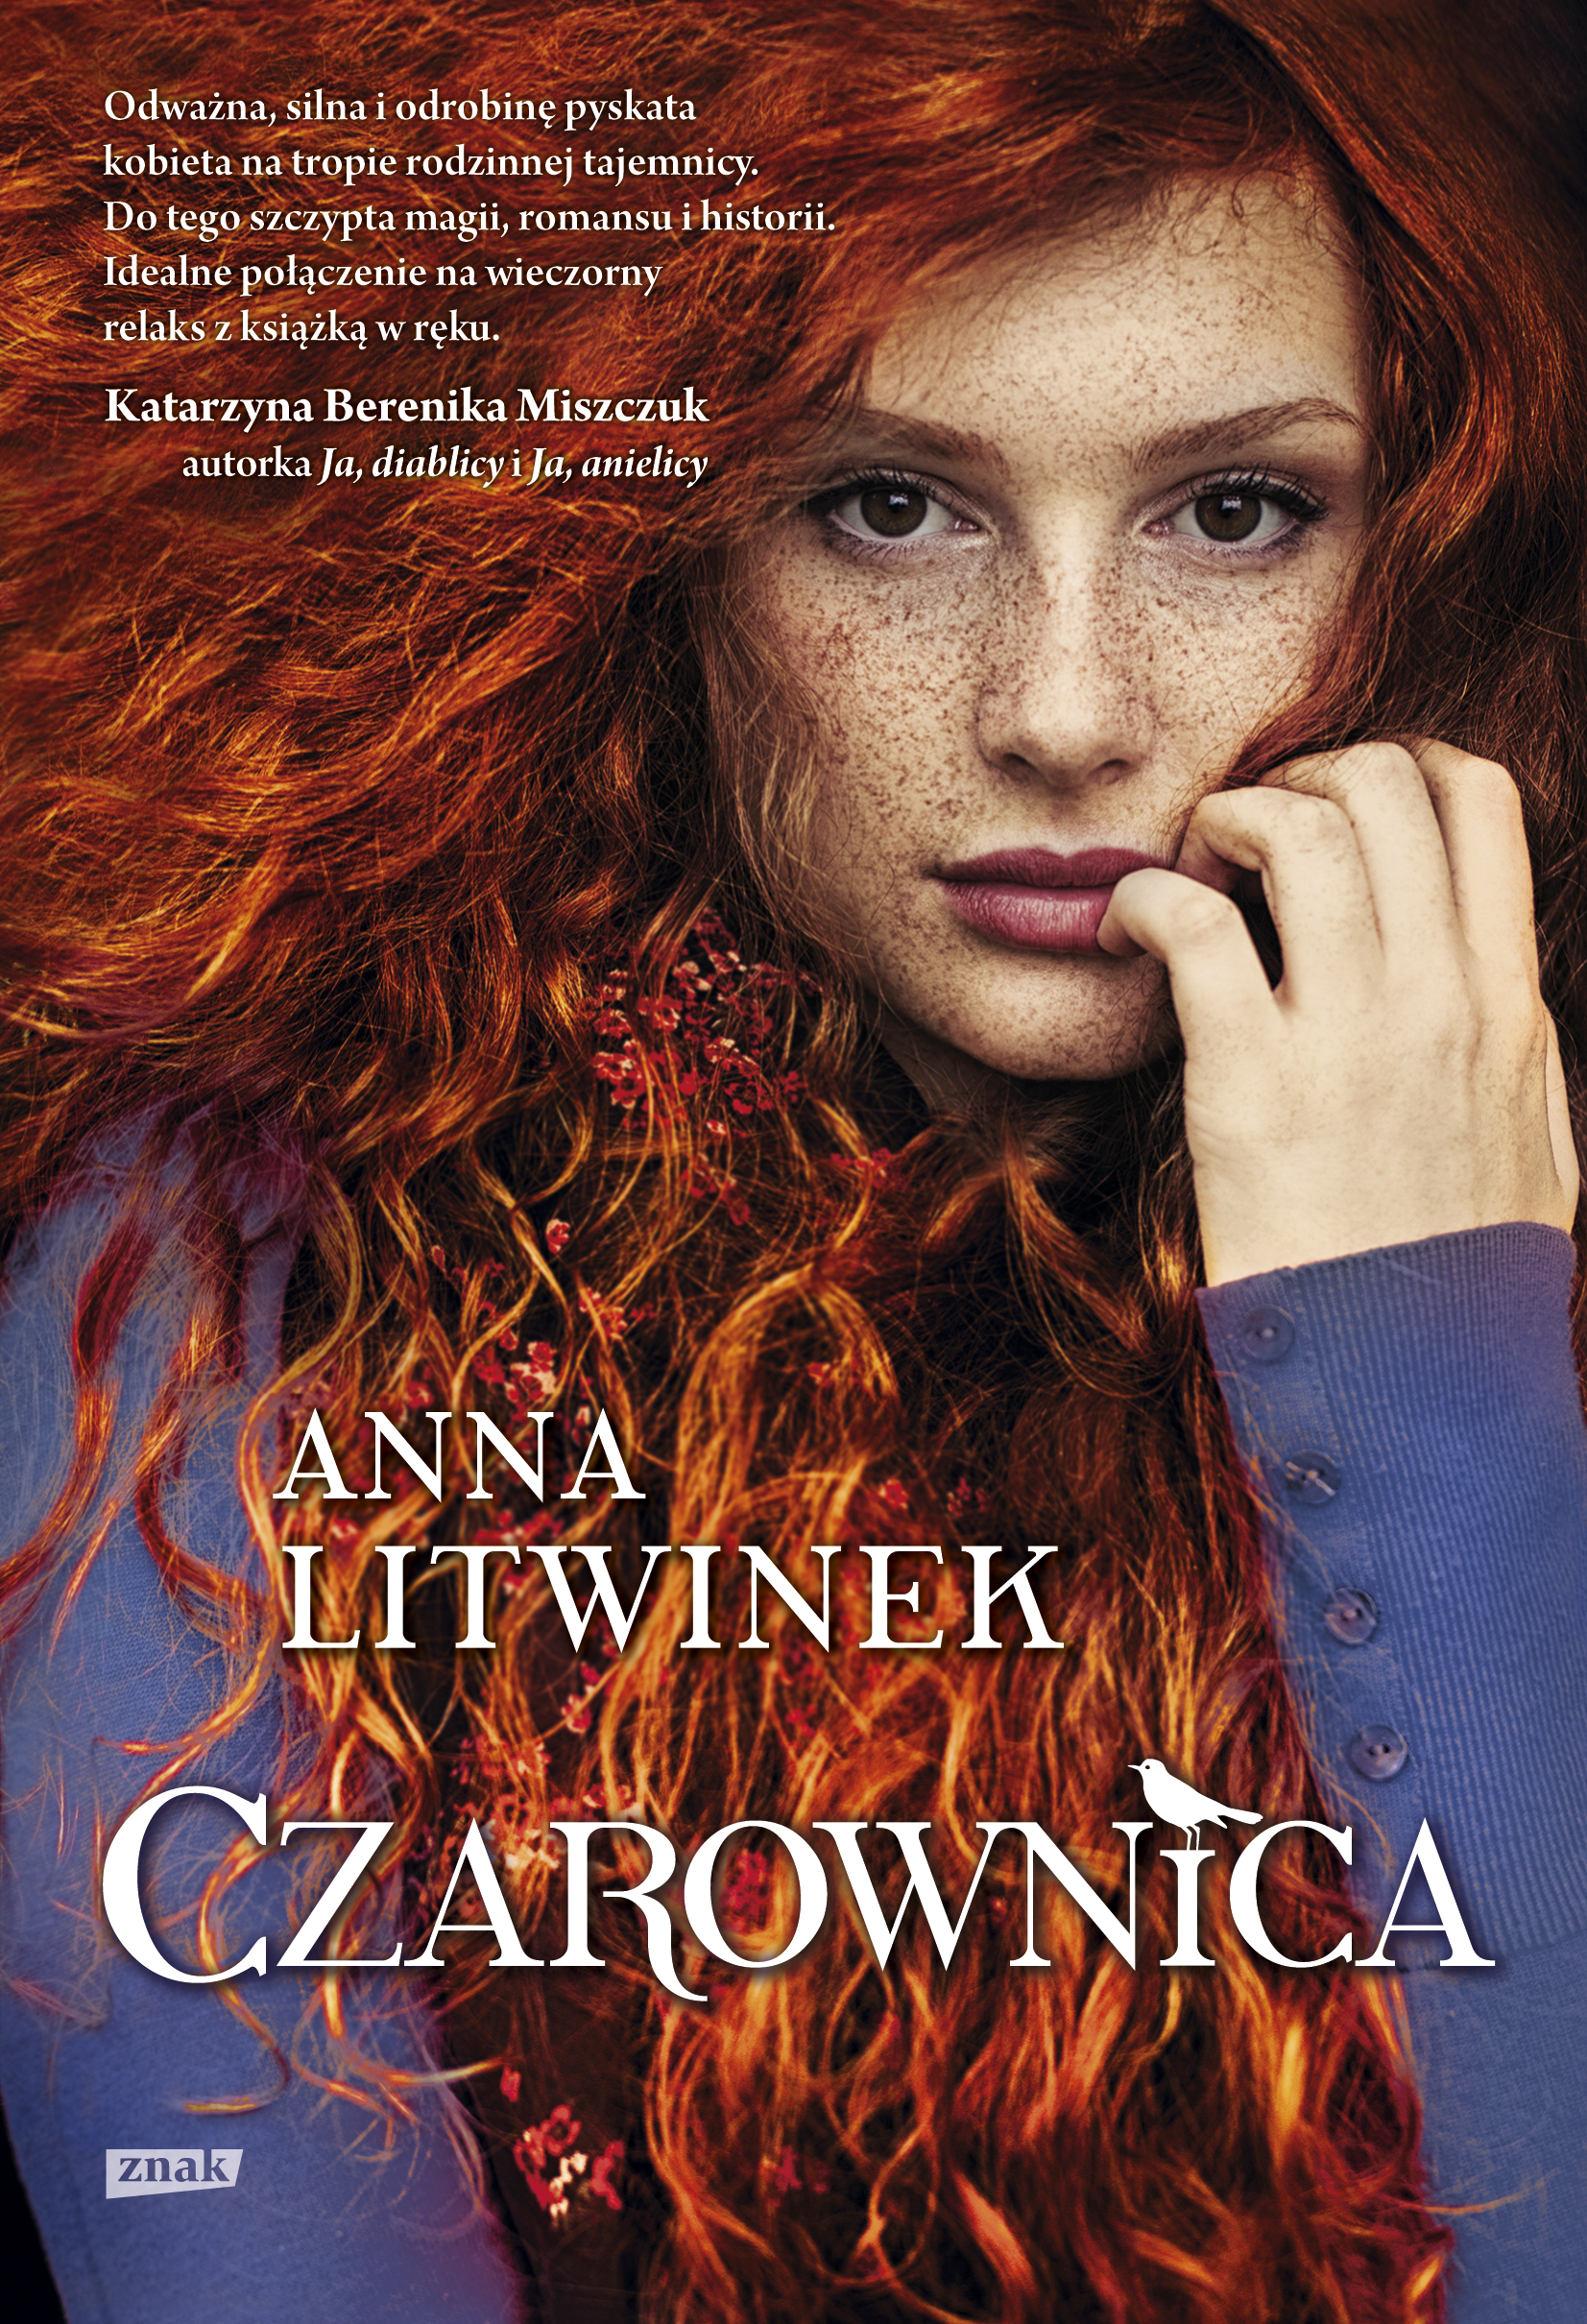 Anna Litwinek Czarownica